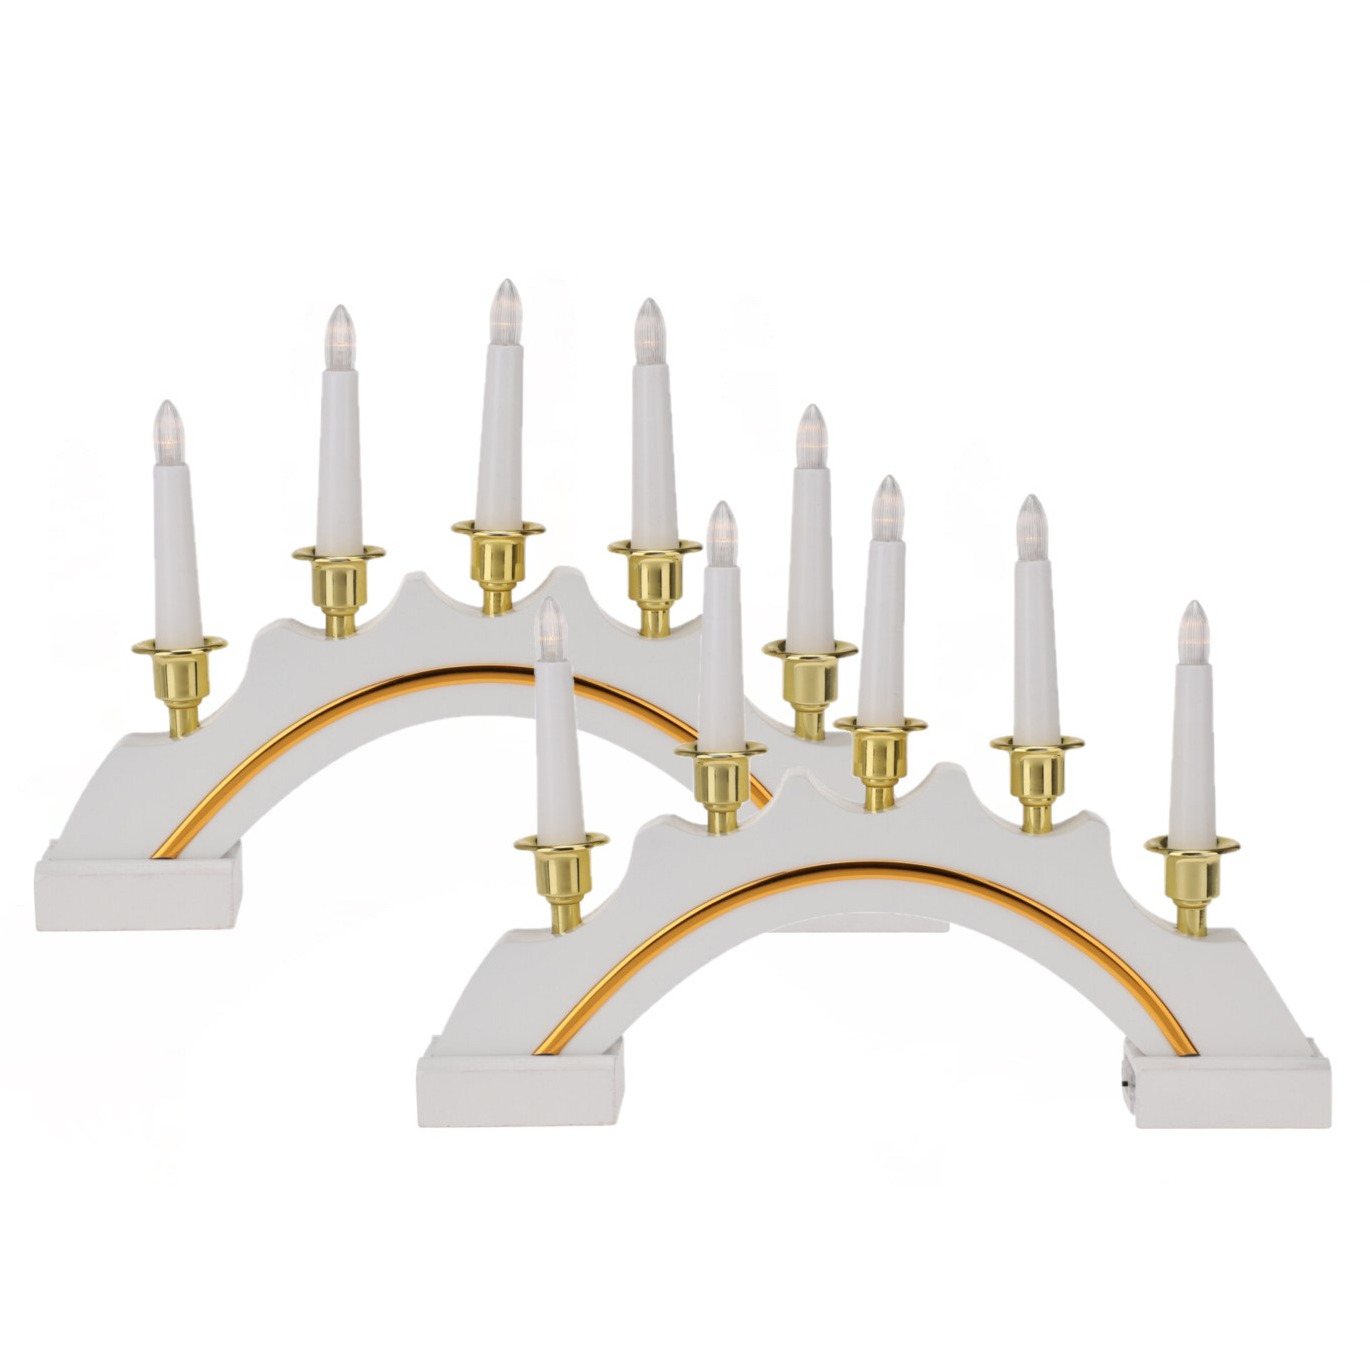 Kaarsenbruggen 2x stuks LED verlichting wit-goud 37 cm